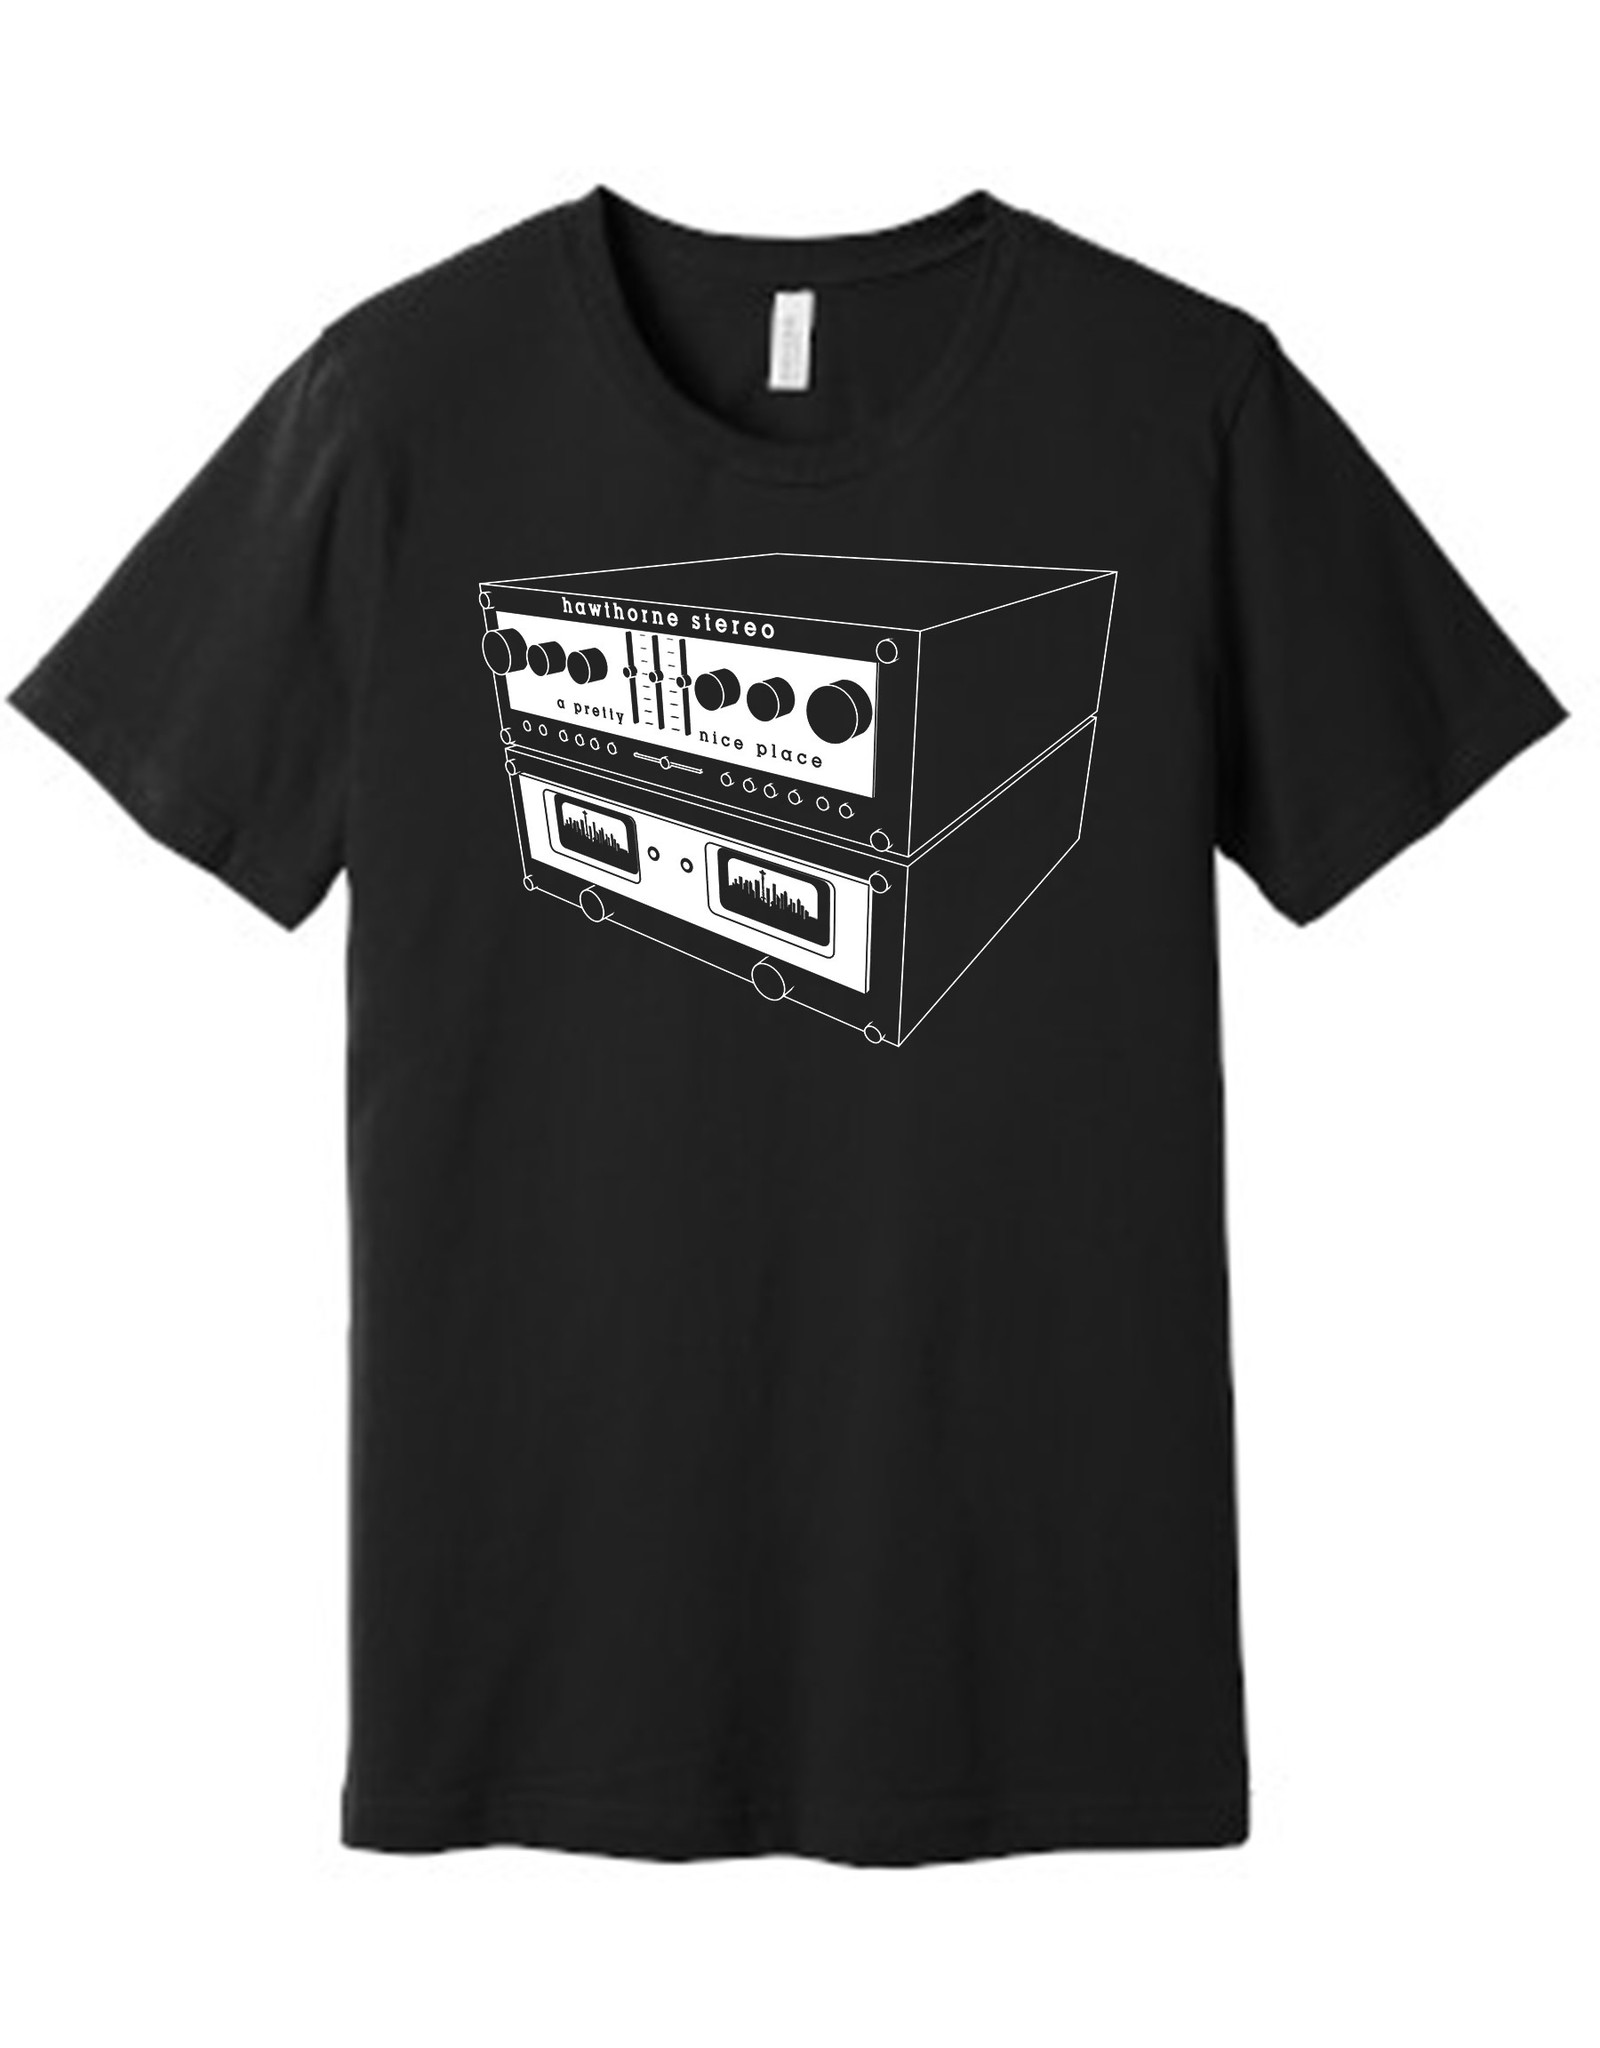 Hawthorne Stereo Hawthorne Stereo T-Shirt